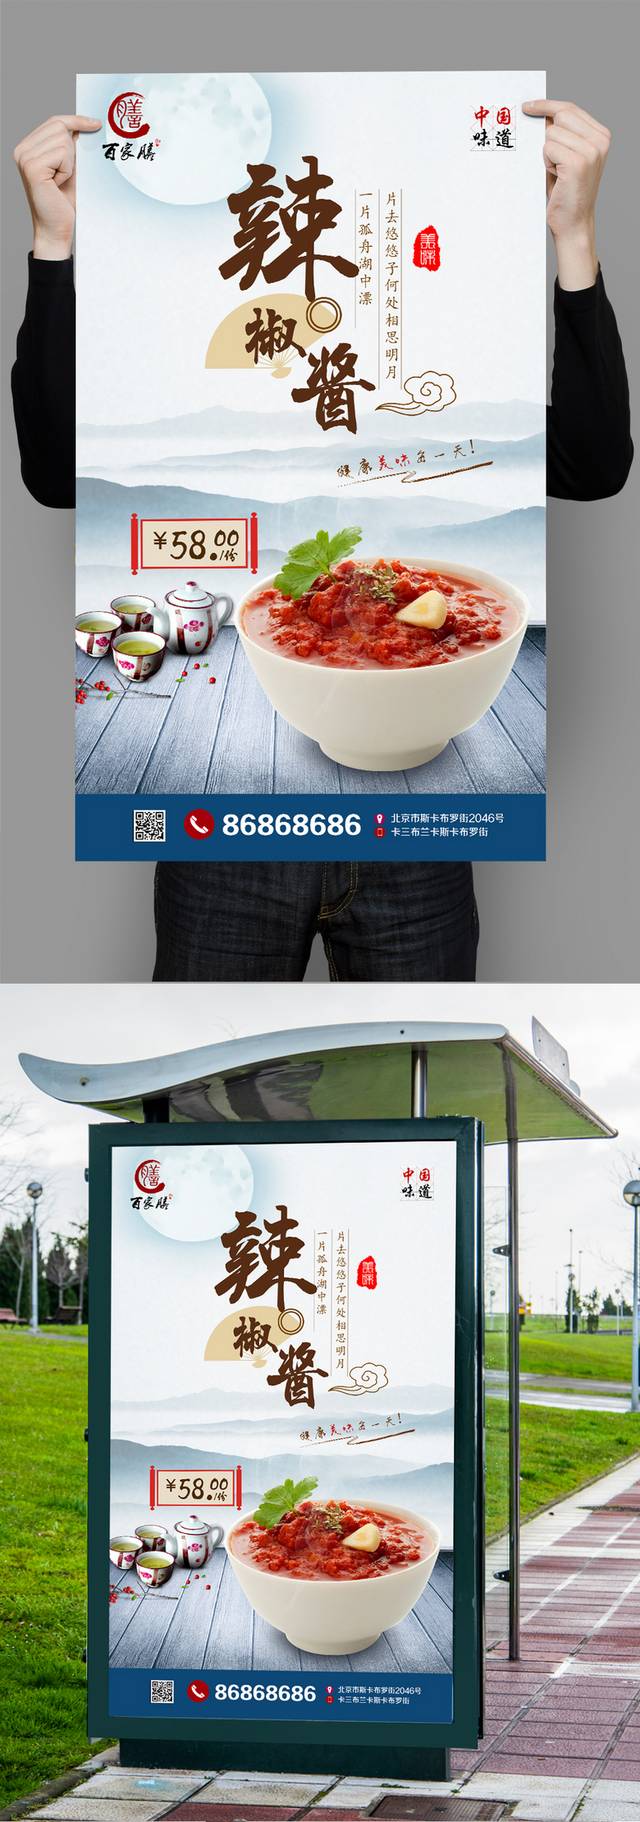 调味品辣椒酱宣传海报设计